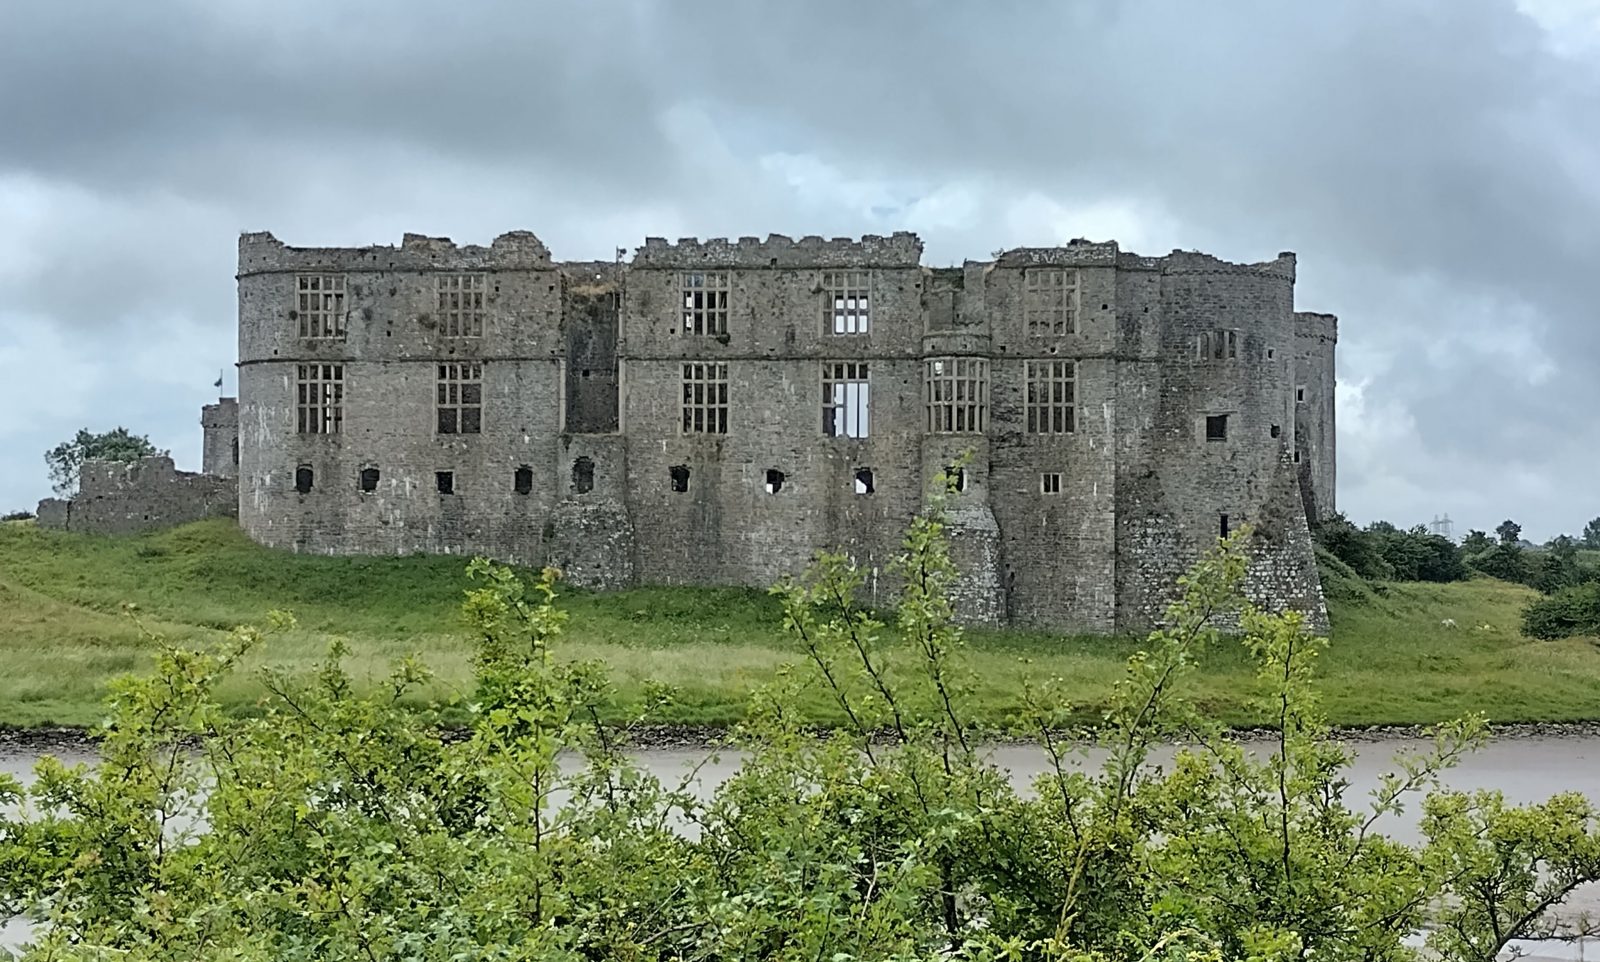 Carew Castle showing the Elizabethan Windows